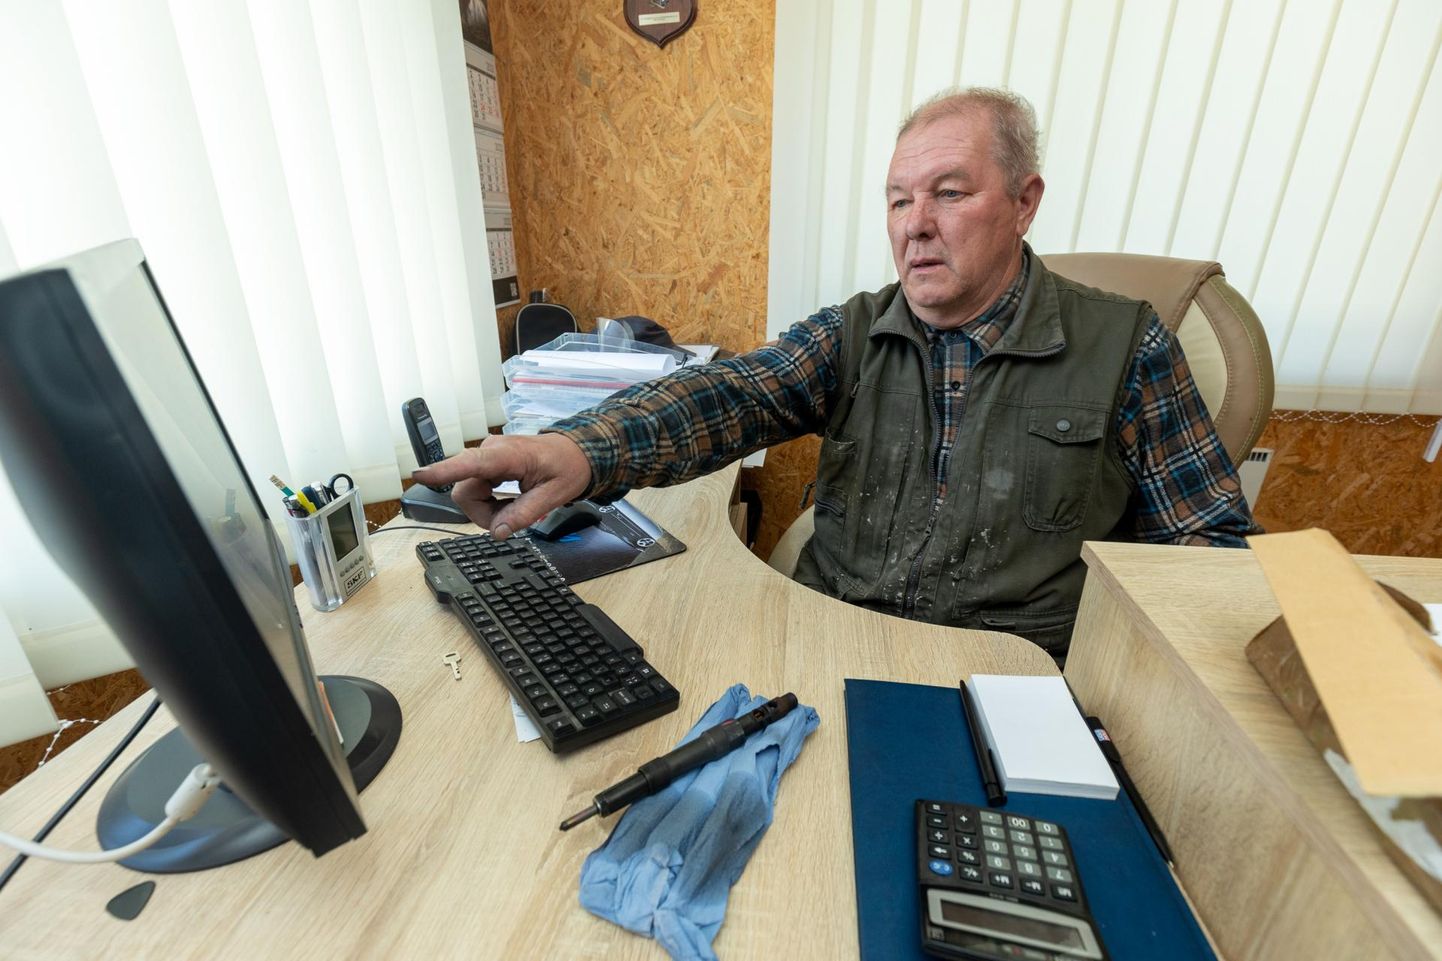 Rakveres autoremonditöökoda pidav ettevõtja Vladimir Antonov sattus hiljuti kentsakasse olukorda, sest tal ei õnnestunud internetioksjonilt soetatud varuosade eest tasuda.